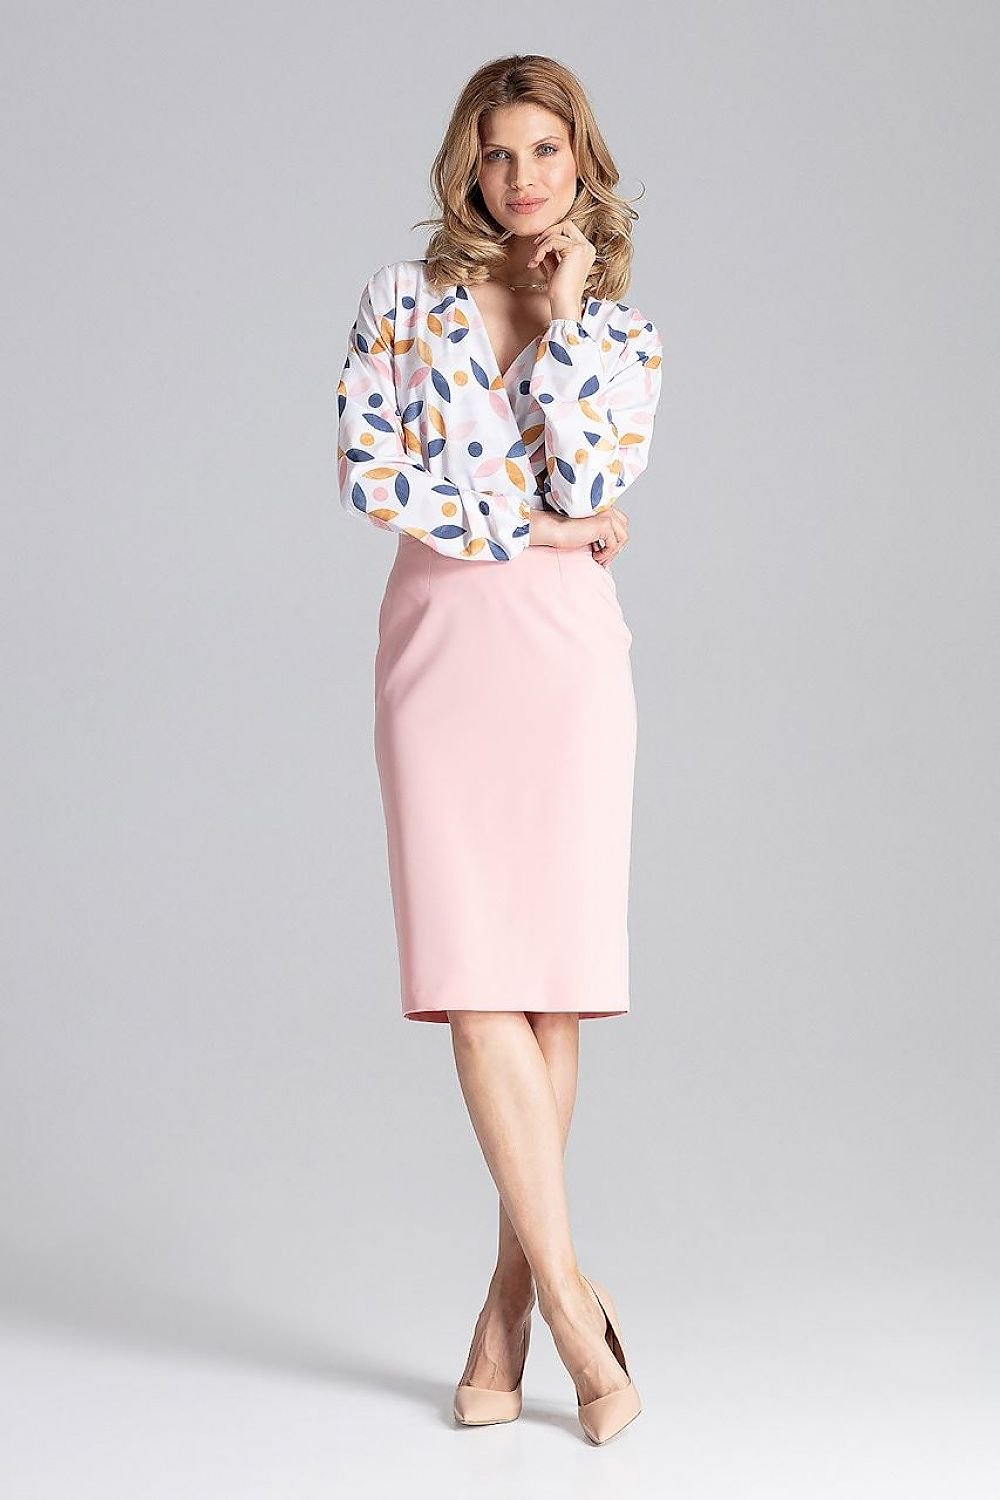 Jupe crayon rose midi élégante pour travail ou sortie, coupe classique et féminine, matière confortable.